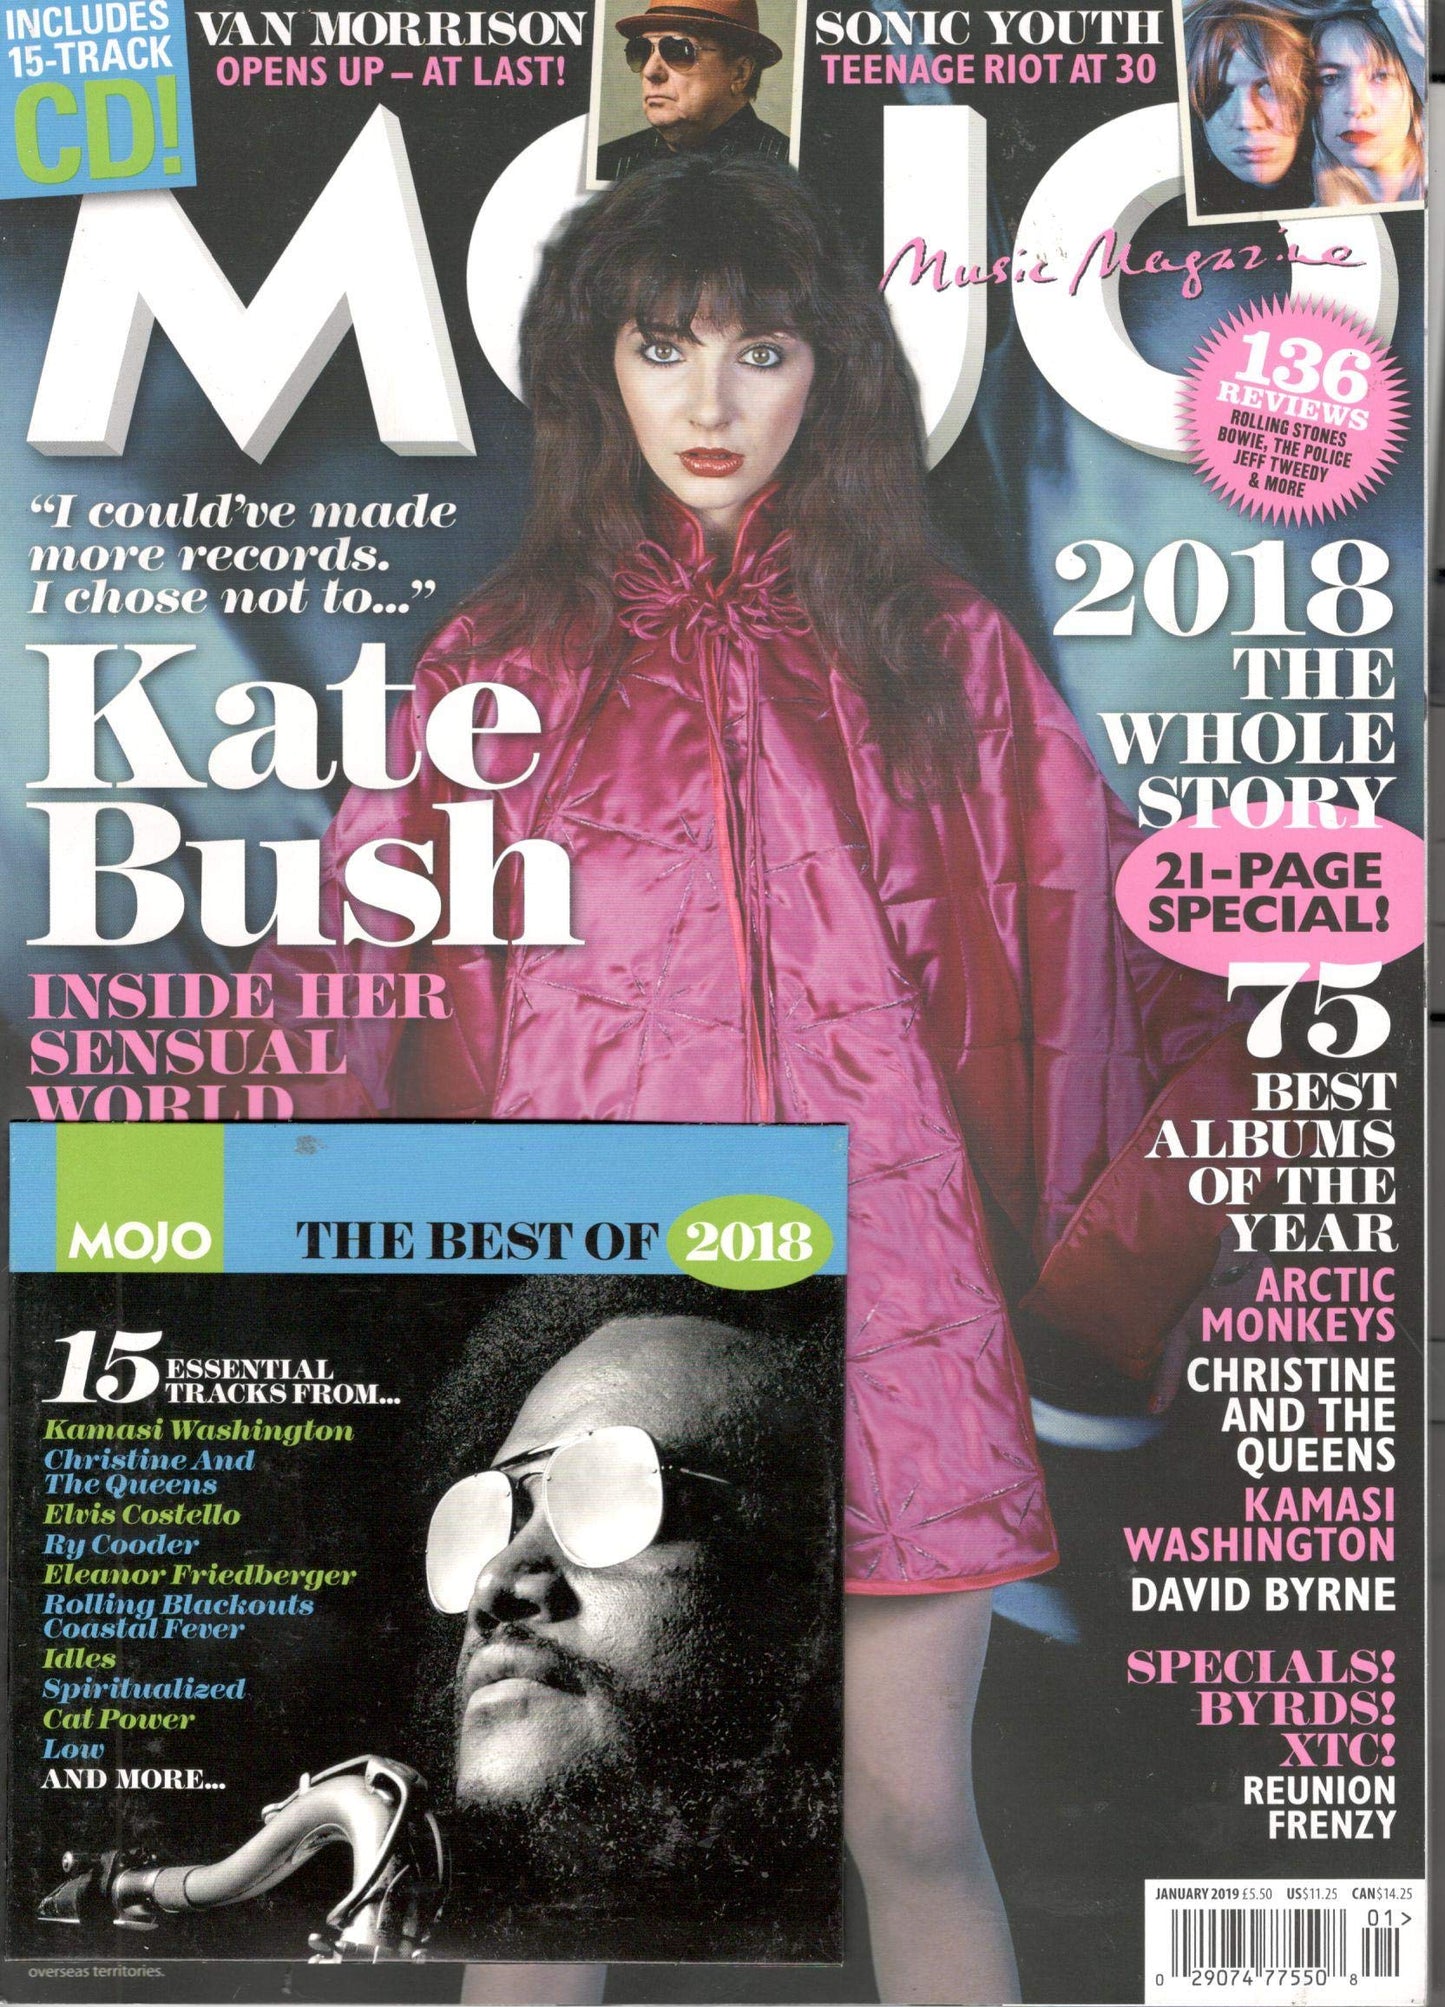 Mojo Magazine Issue 302 (January 2019)